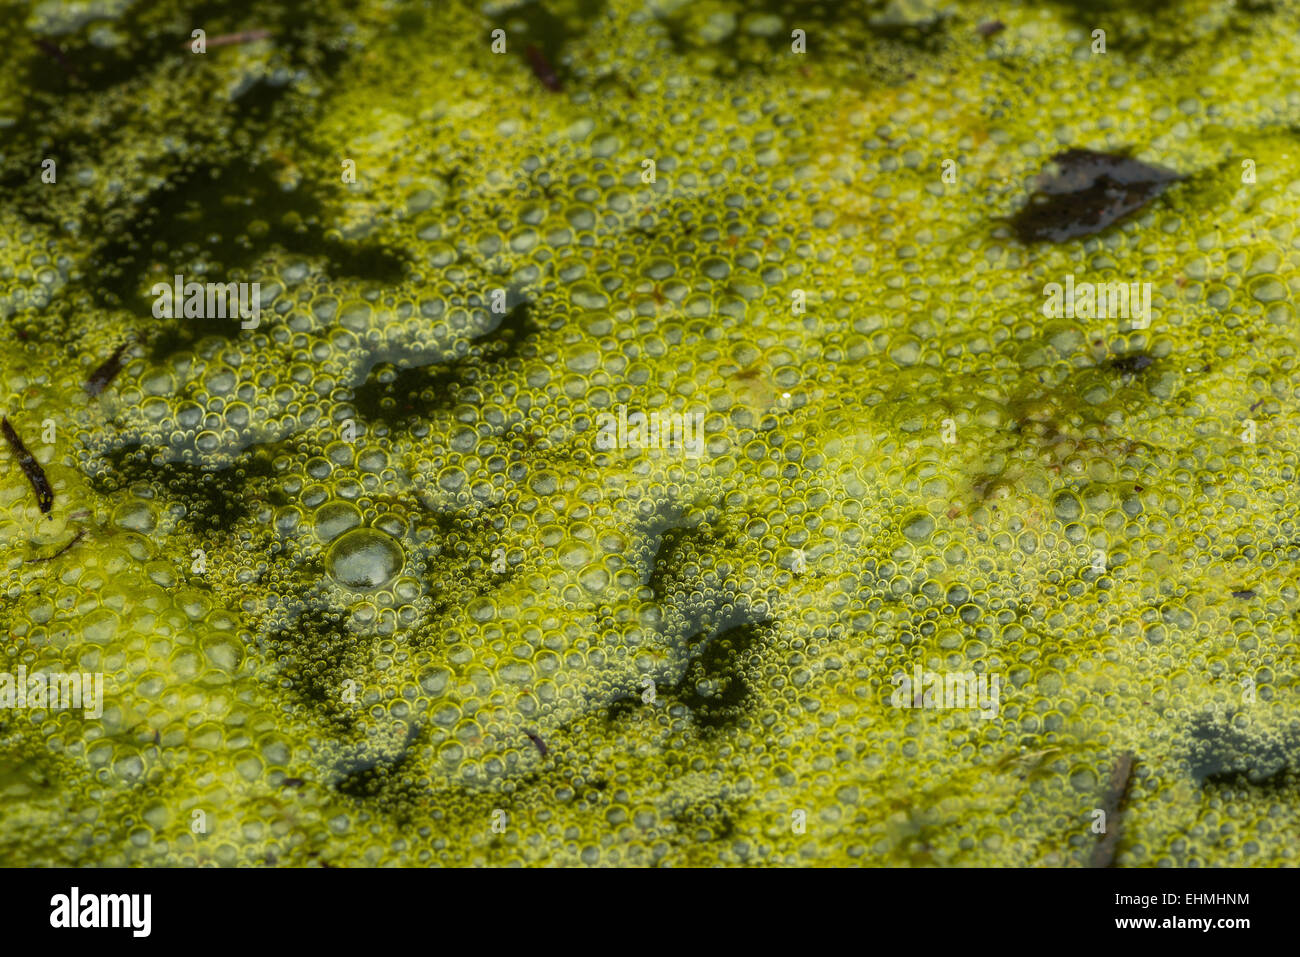 Densa cobertura de algas filamentosas alga verde brillante con masas de burbujas de gas metano atrapado oxígeno vegetación putrefacta debajo Foto de stock